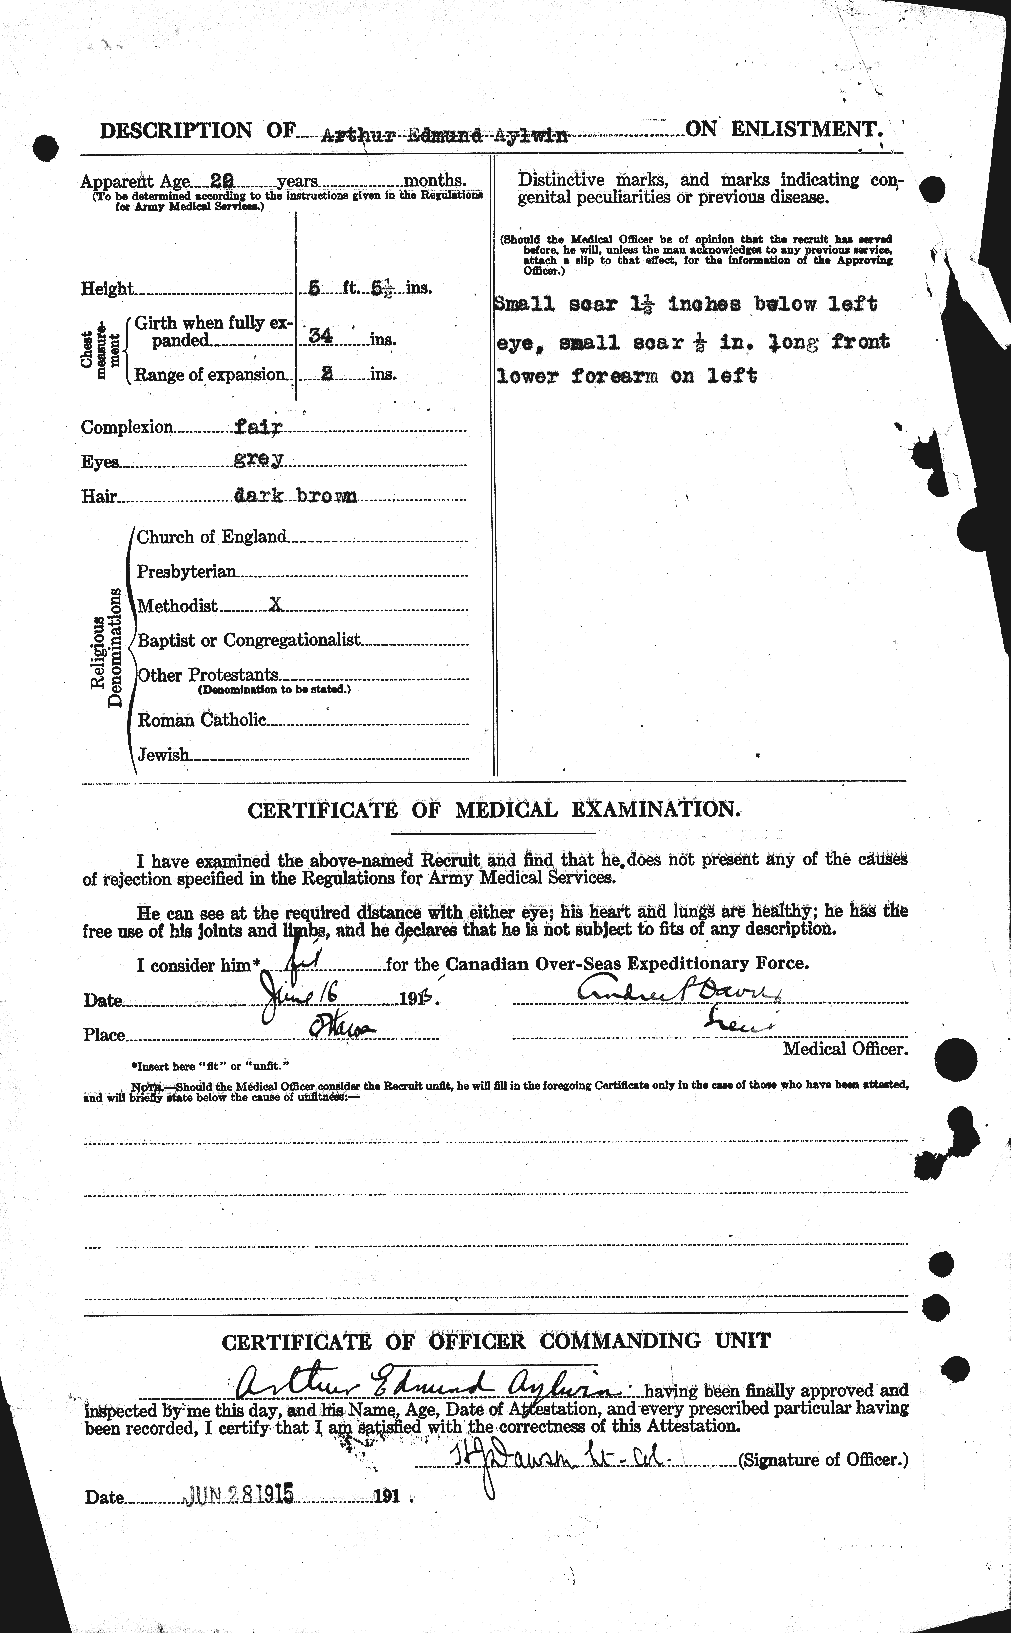 Dossiers du Personnel de la Première Guerre mondiale - CEC 215727b